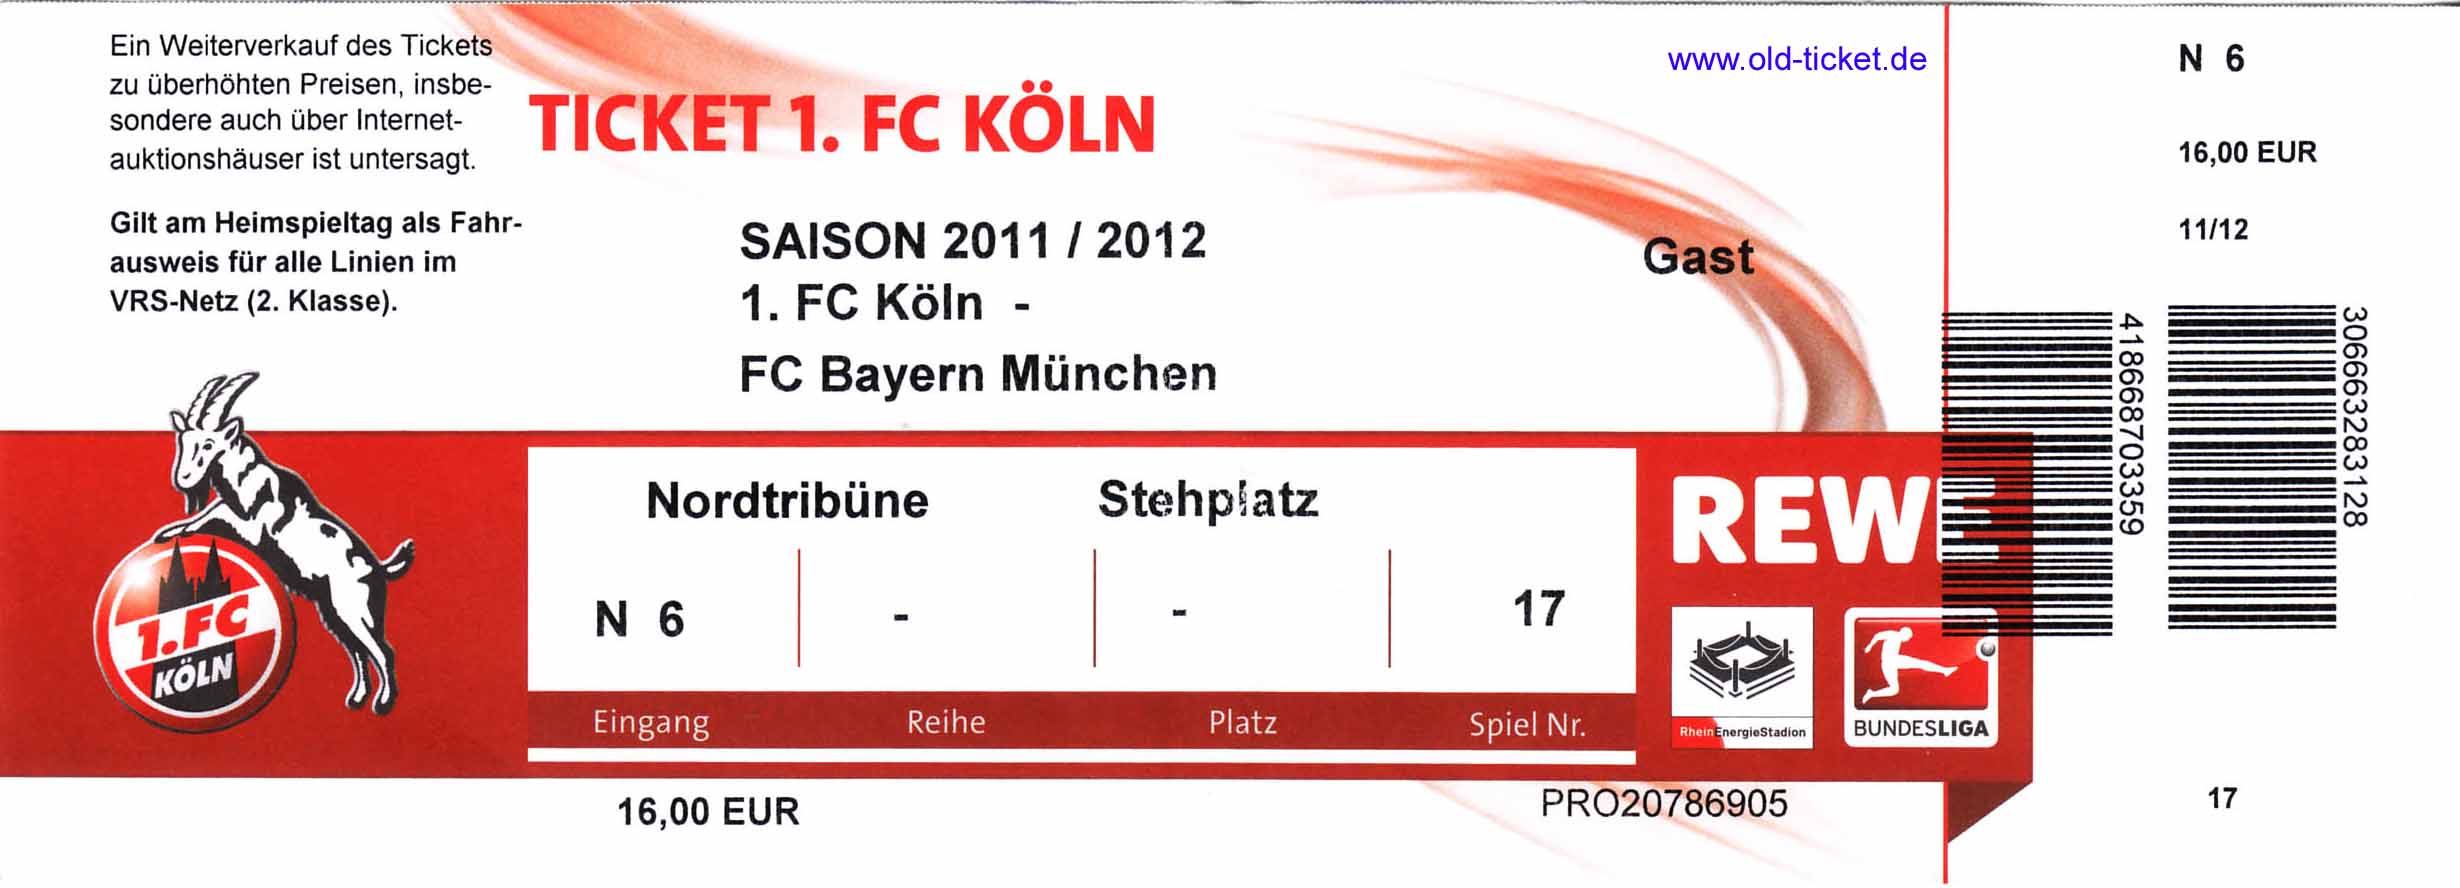 Tickets 1. Fc Köln